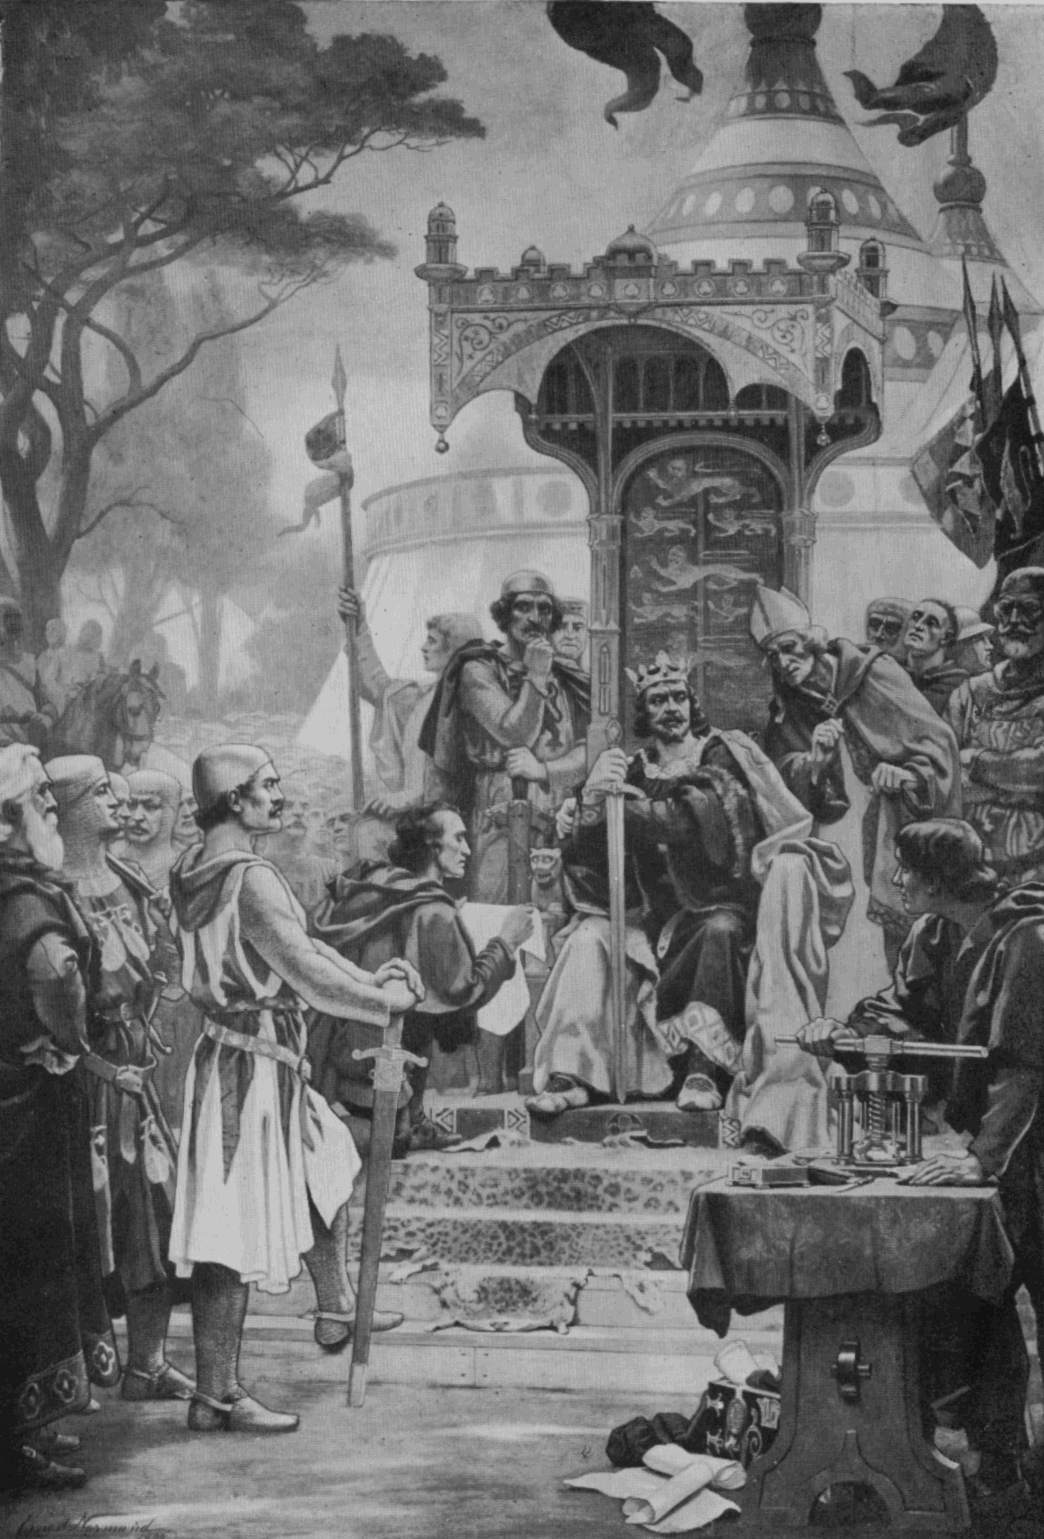 King John at the granting of Magna Carta in 1215